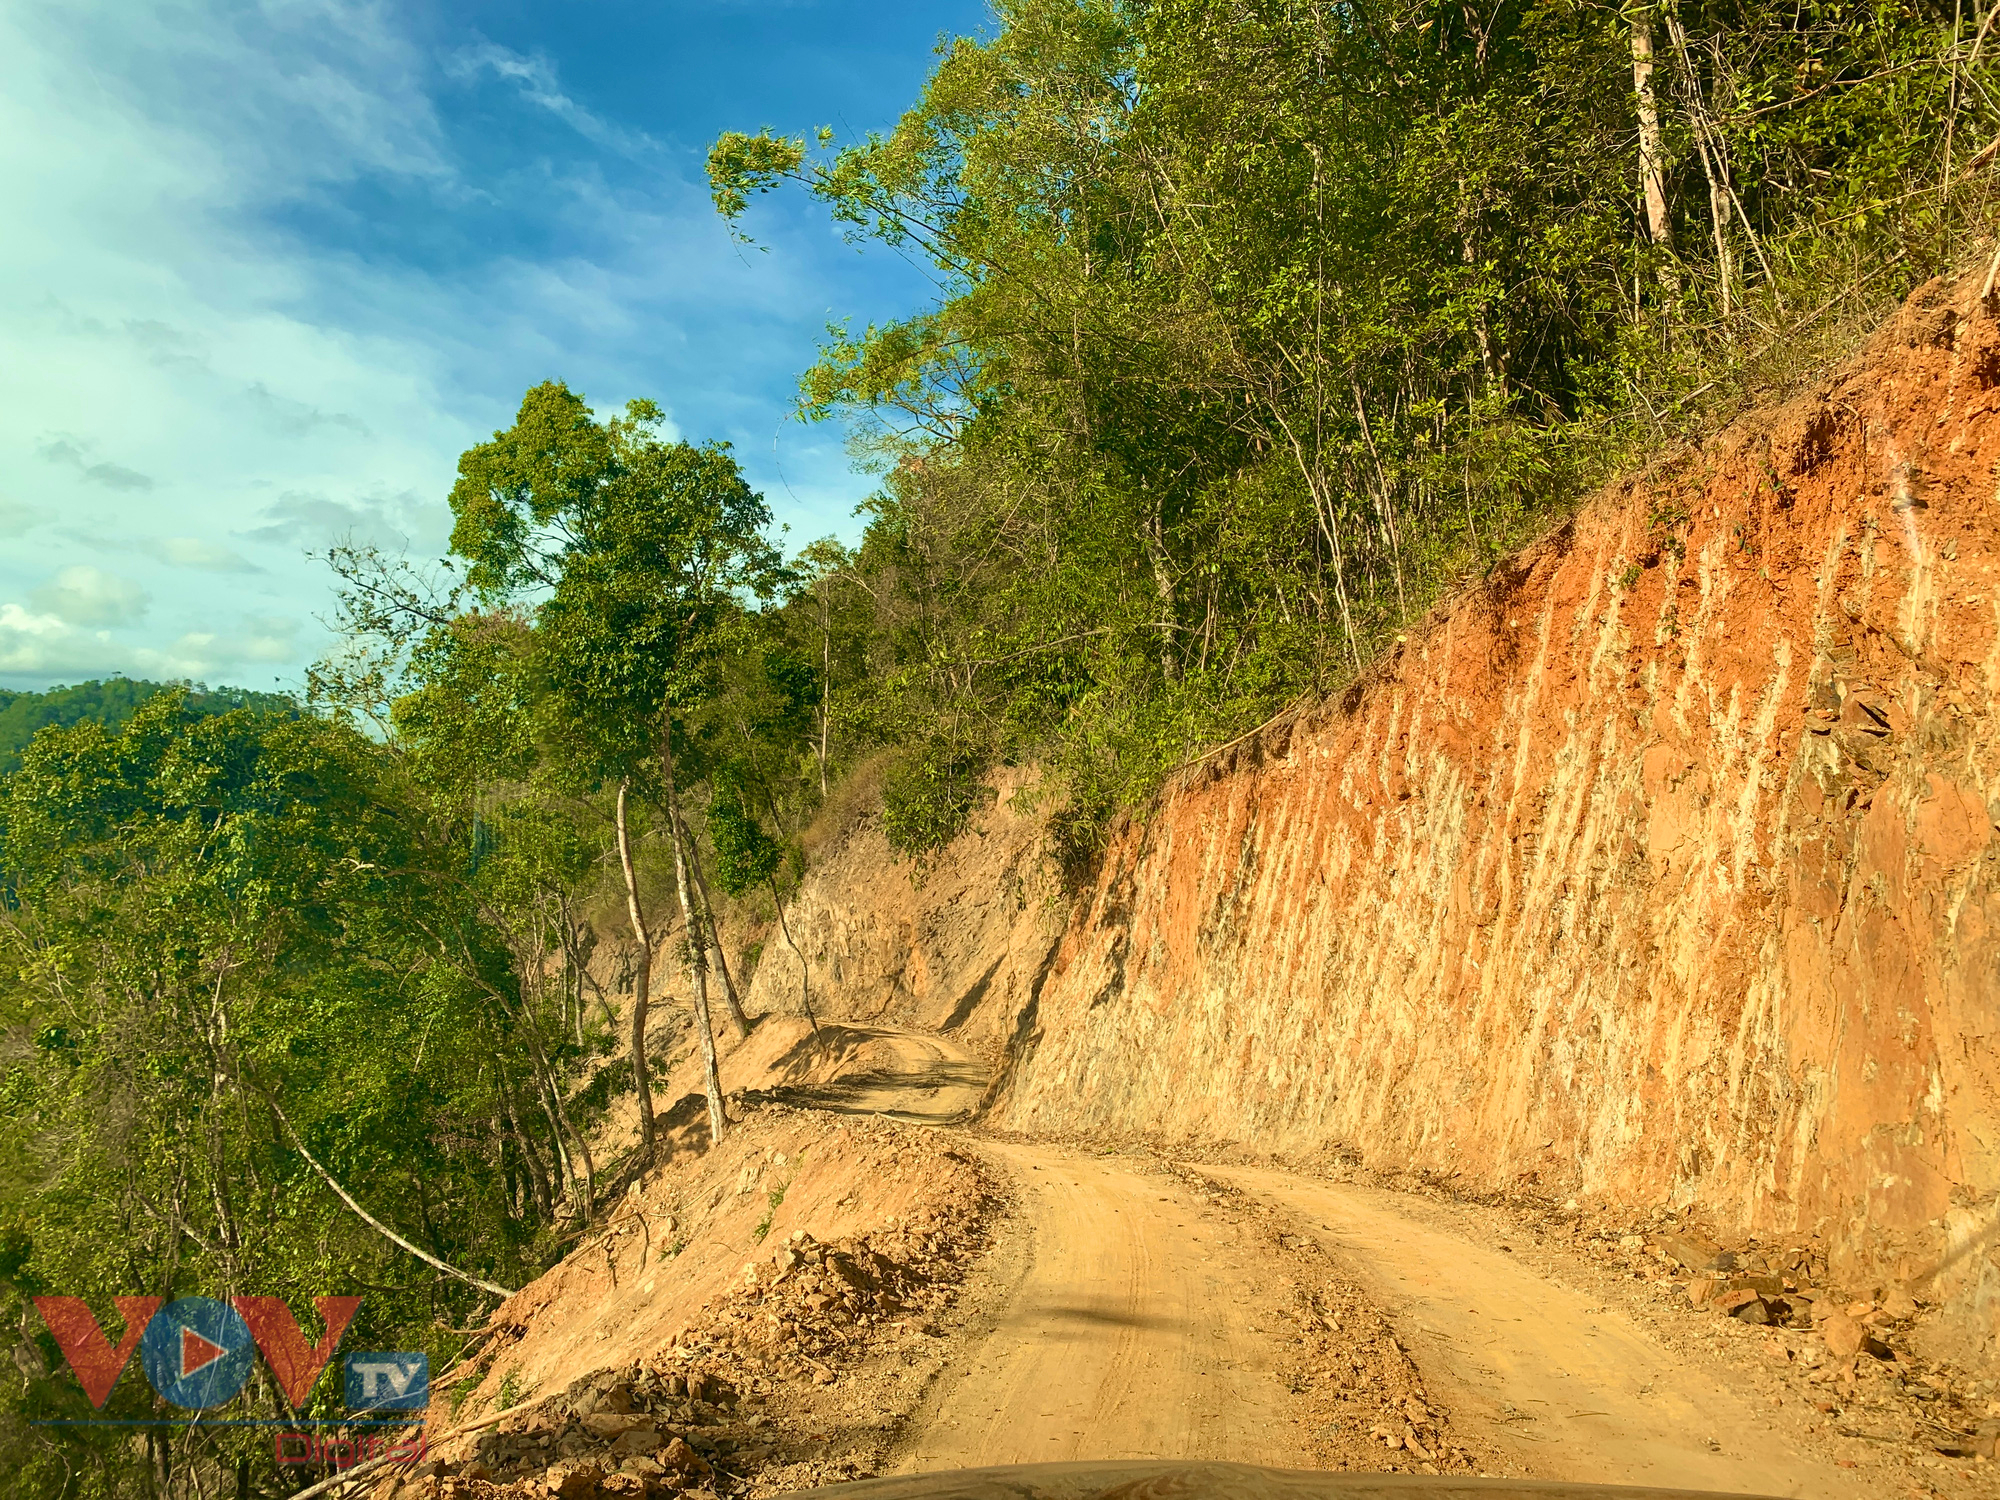 Cận cảnh rừng Quốc gia tại Đắk Lắk, Lâm Đồng bị phá để làm đường khi chưa được phép - Ảnh 7.